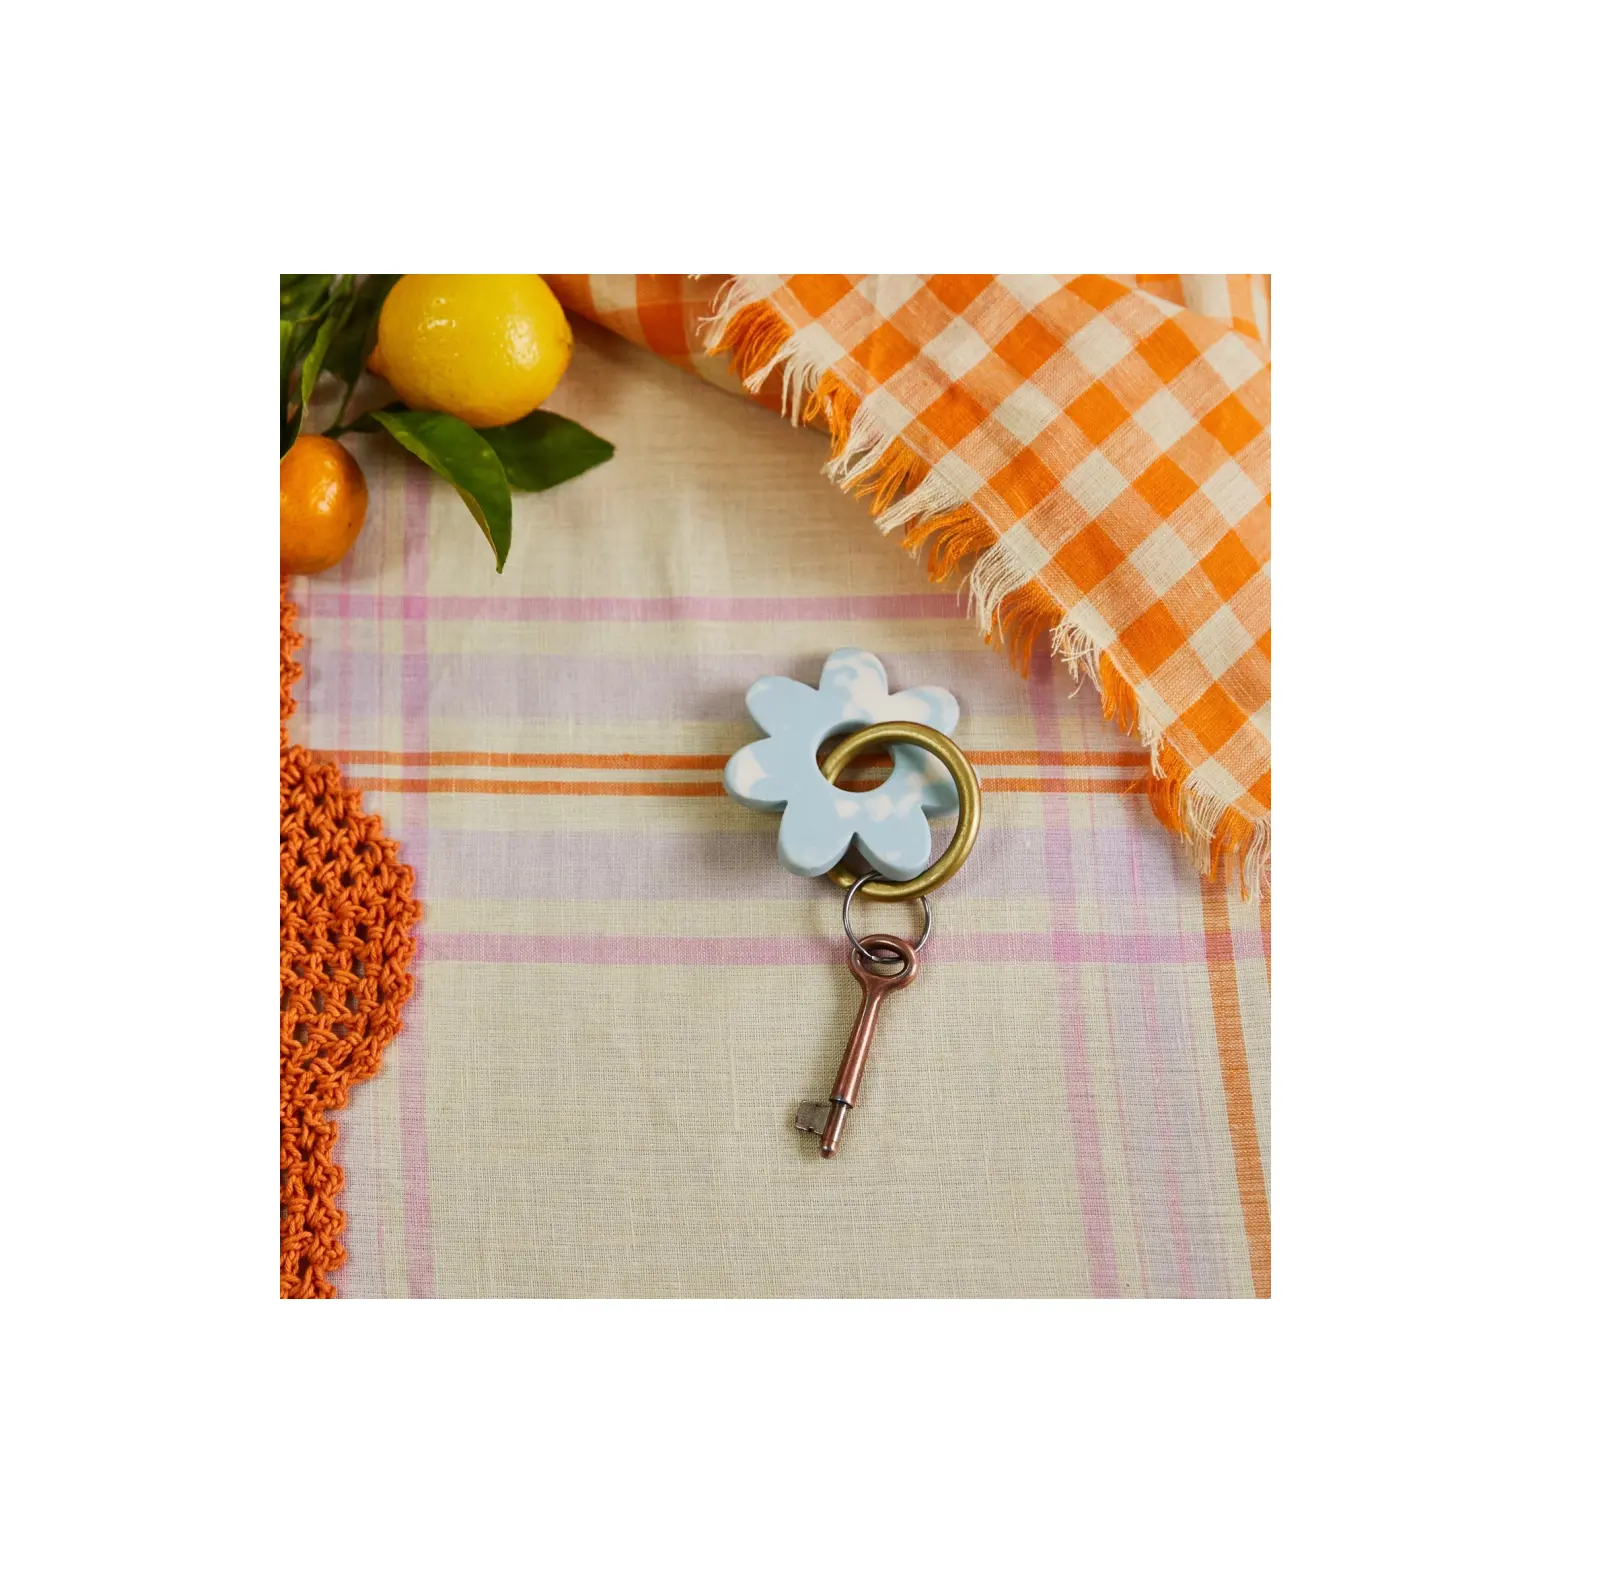 Beste Qualität Harz Schlüssel ring mit Blumen Design Stück mit Messing Schlüssel und Kette Handtasche Verwendung für dekorative Gegenstände